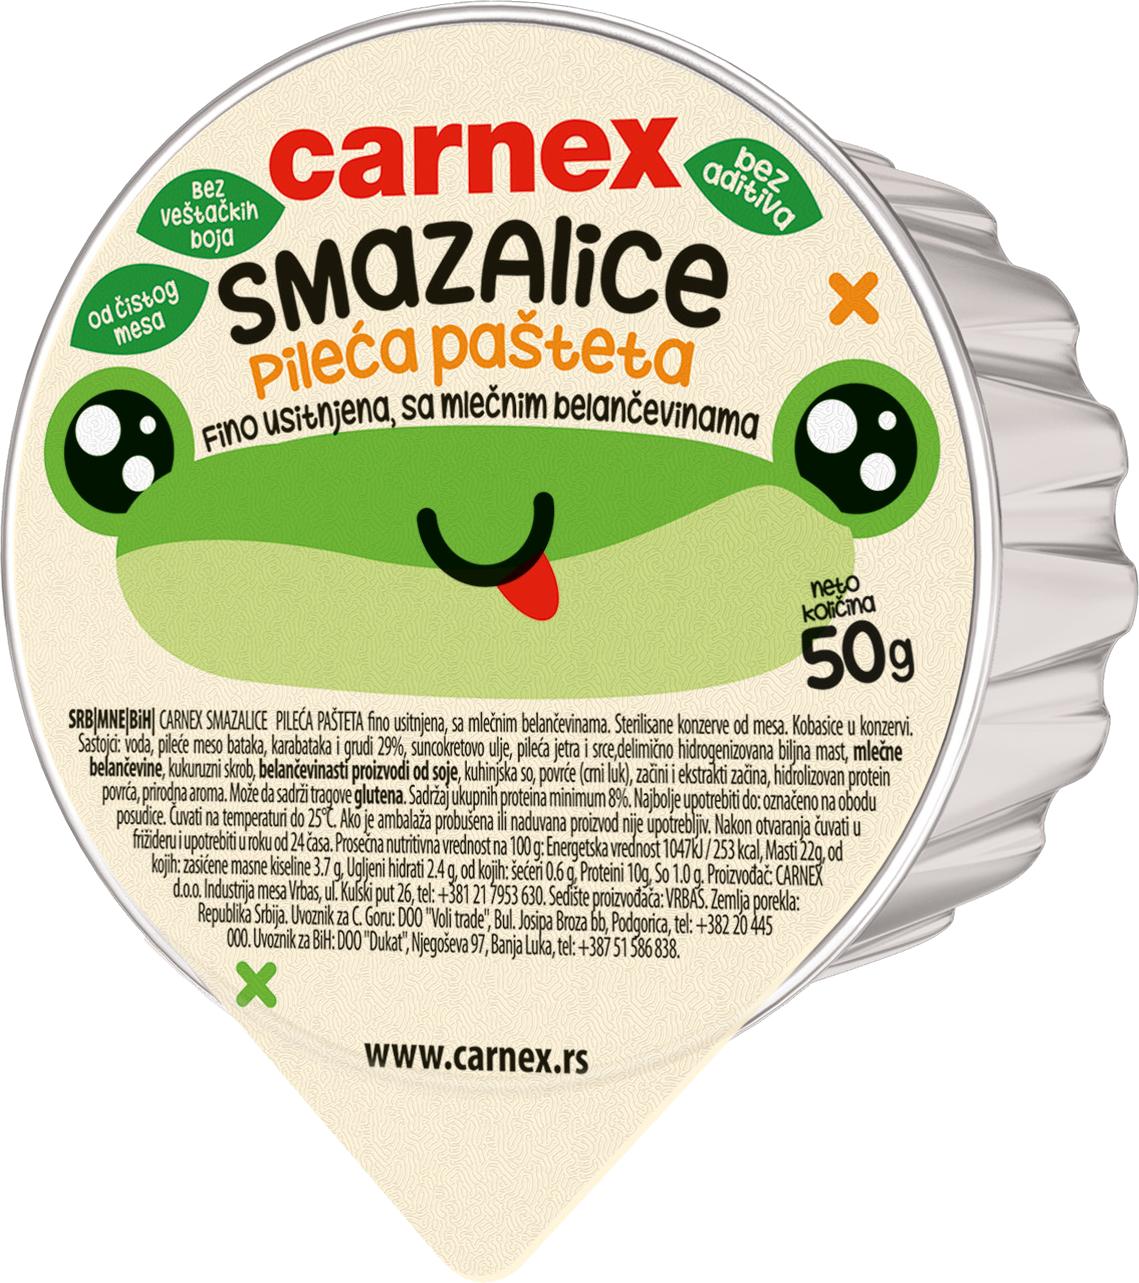 Slika za Pileća pašteta smazalice Carnex 50g